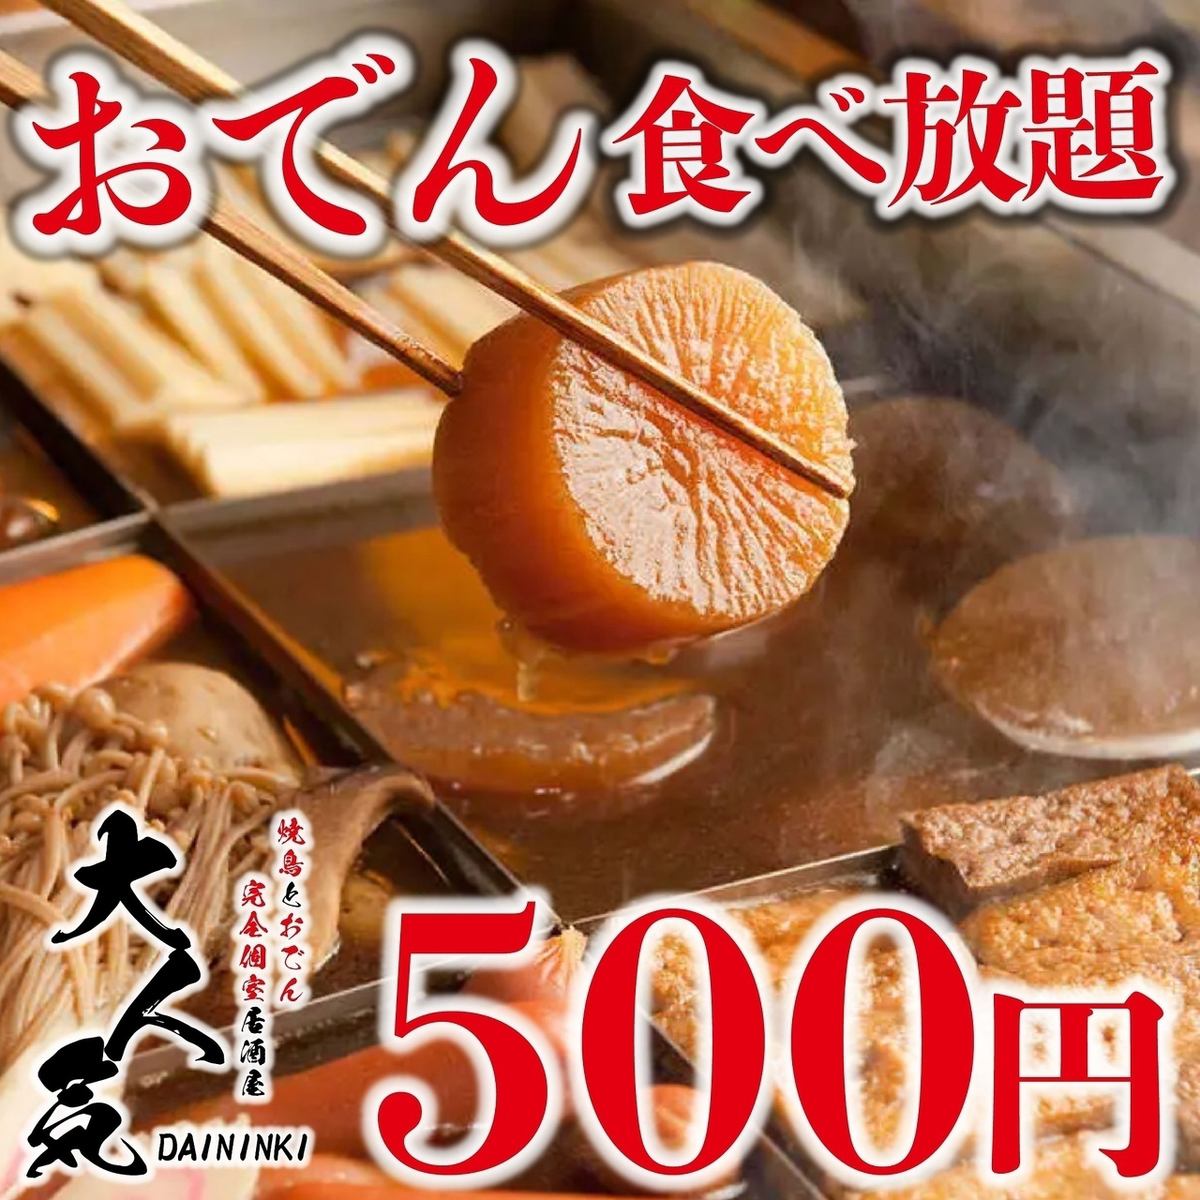 包括特制汤料关东煮在内的130种菜品的自助餐只要3,500日元。